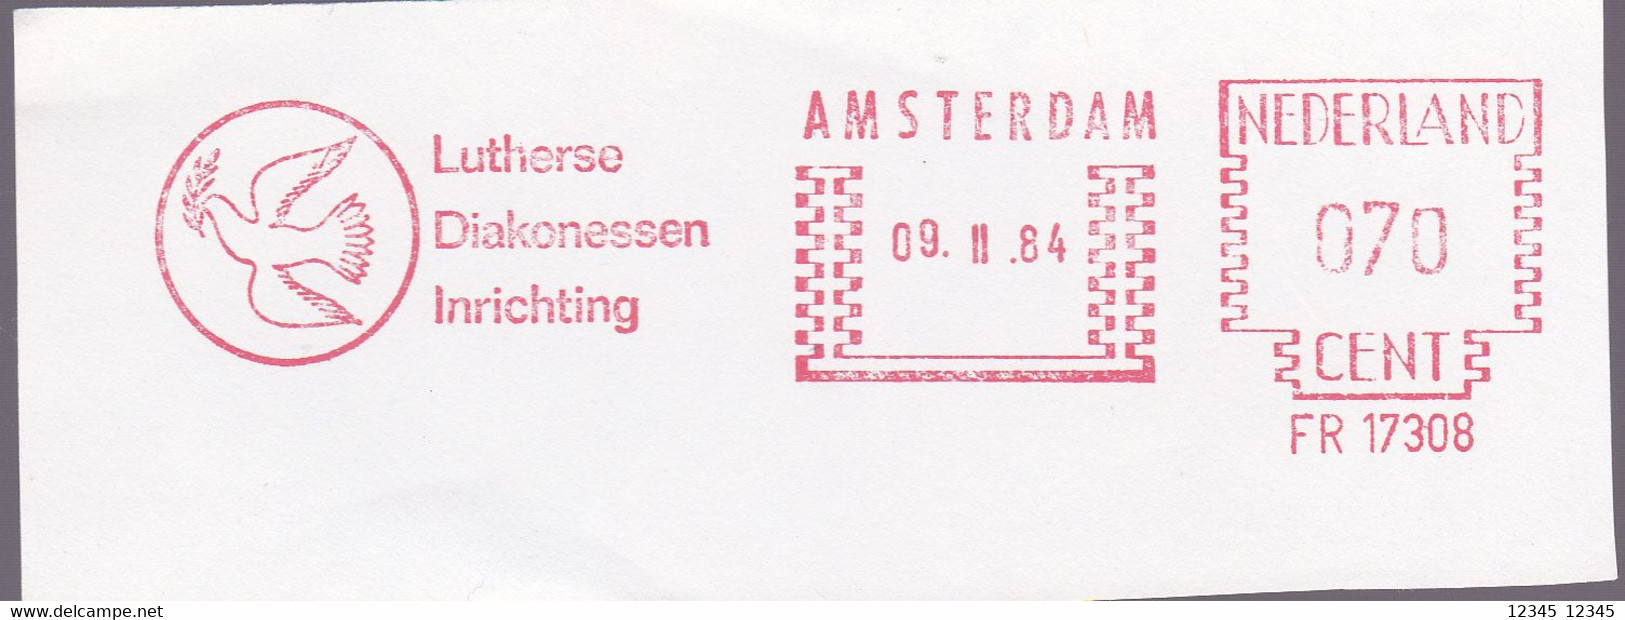 Amsterdam 1984, Lutherse Diakonessen Inrichting, Birds - Machines à Affranchir (EMA)